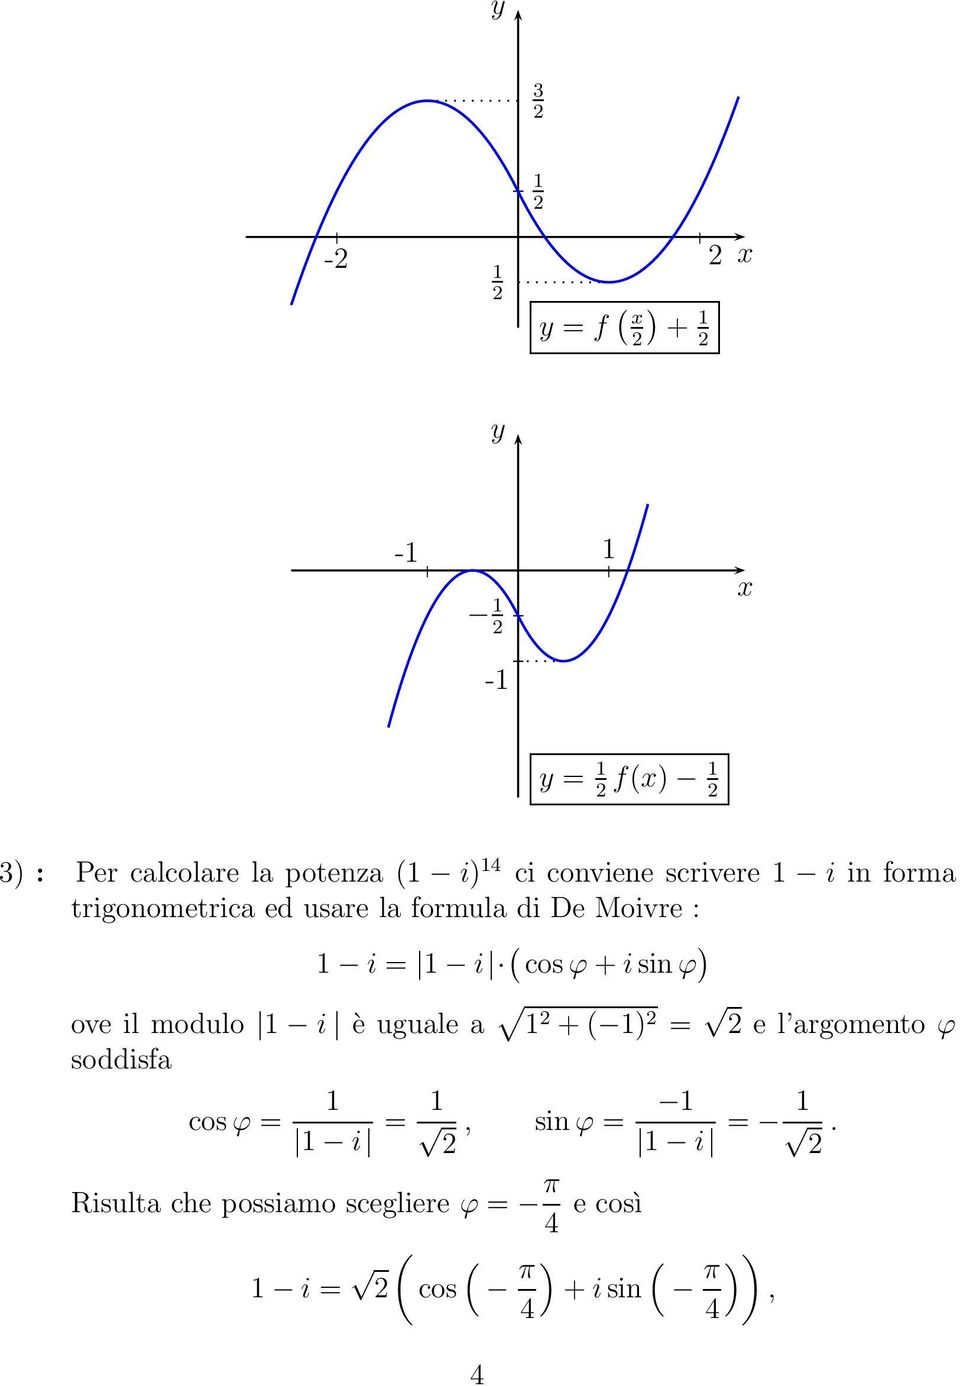 + i sin ϕ ove il modulo i è uguale a + = e l argomento ϕ soddisfa cos ϕ = i =,